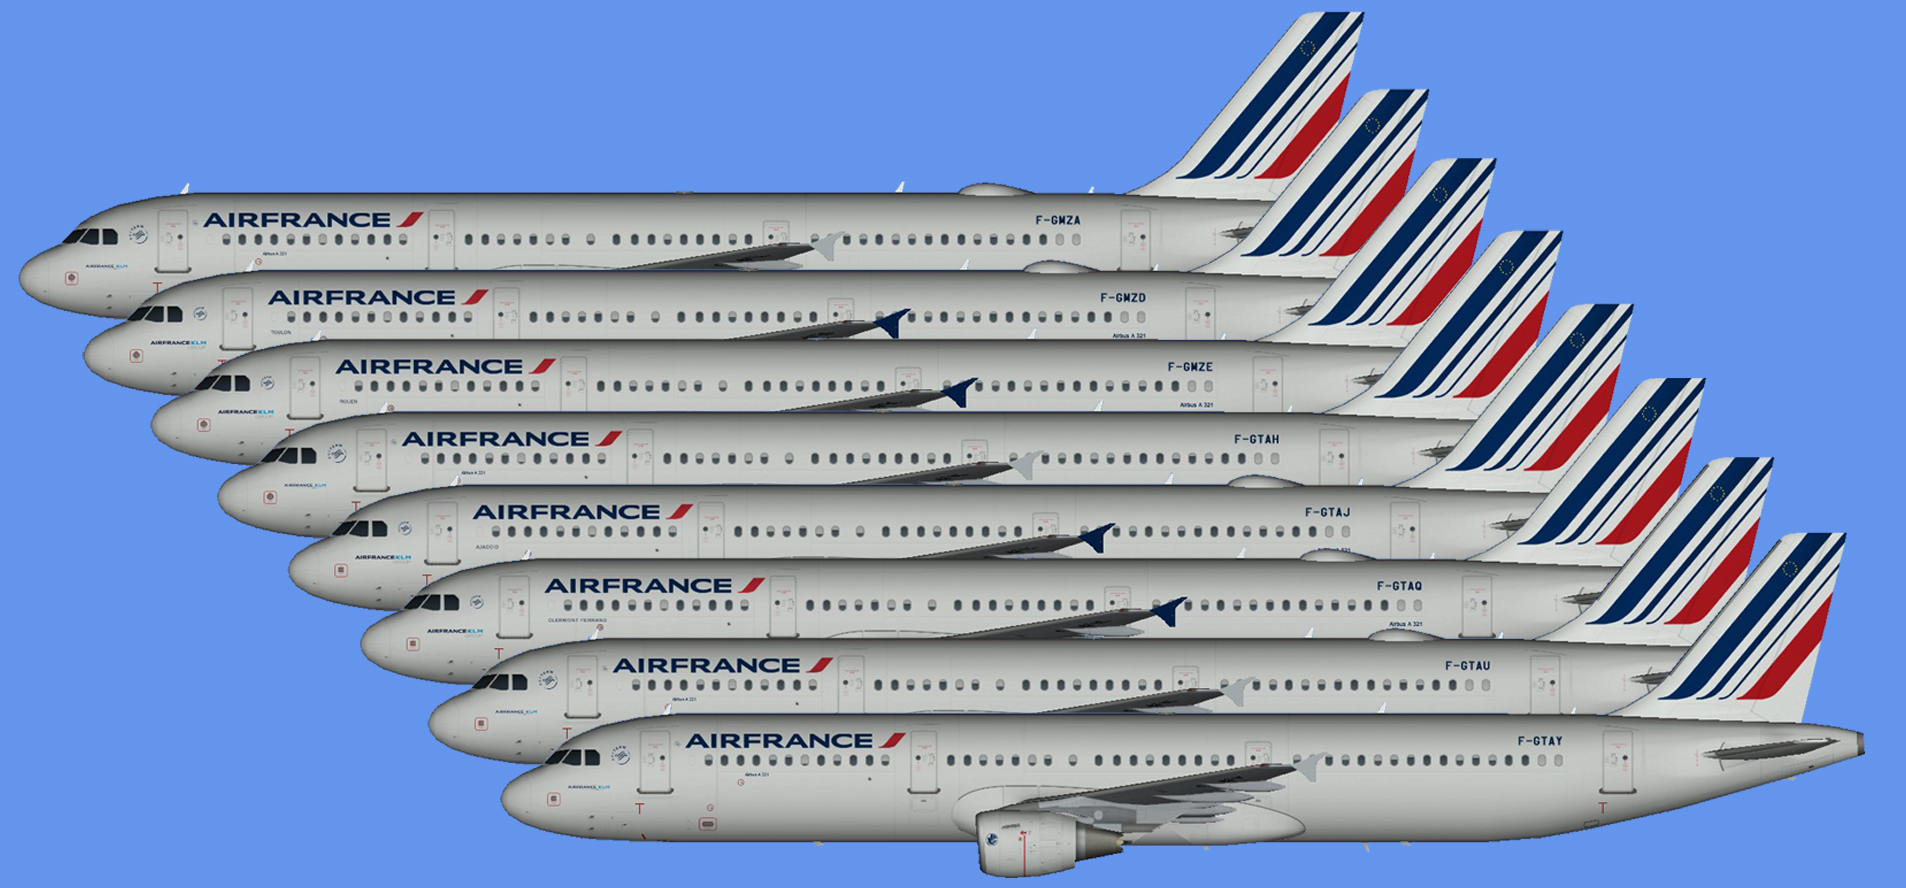 Air France Airbus A321